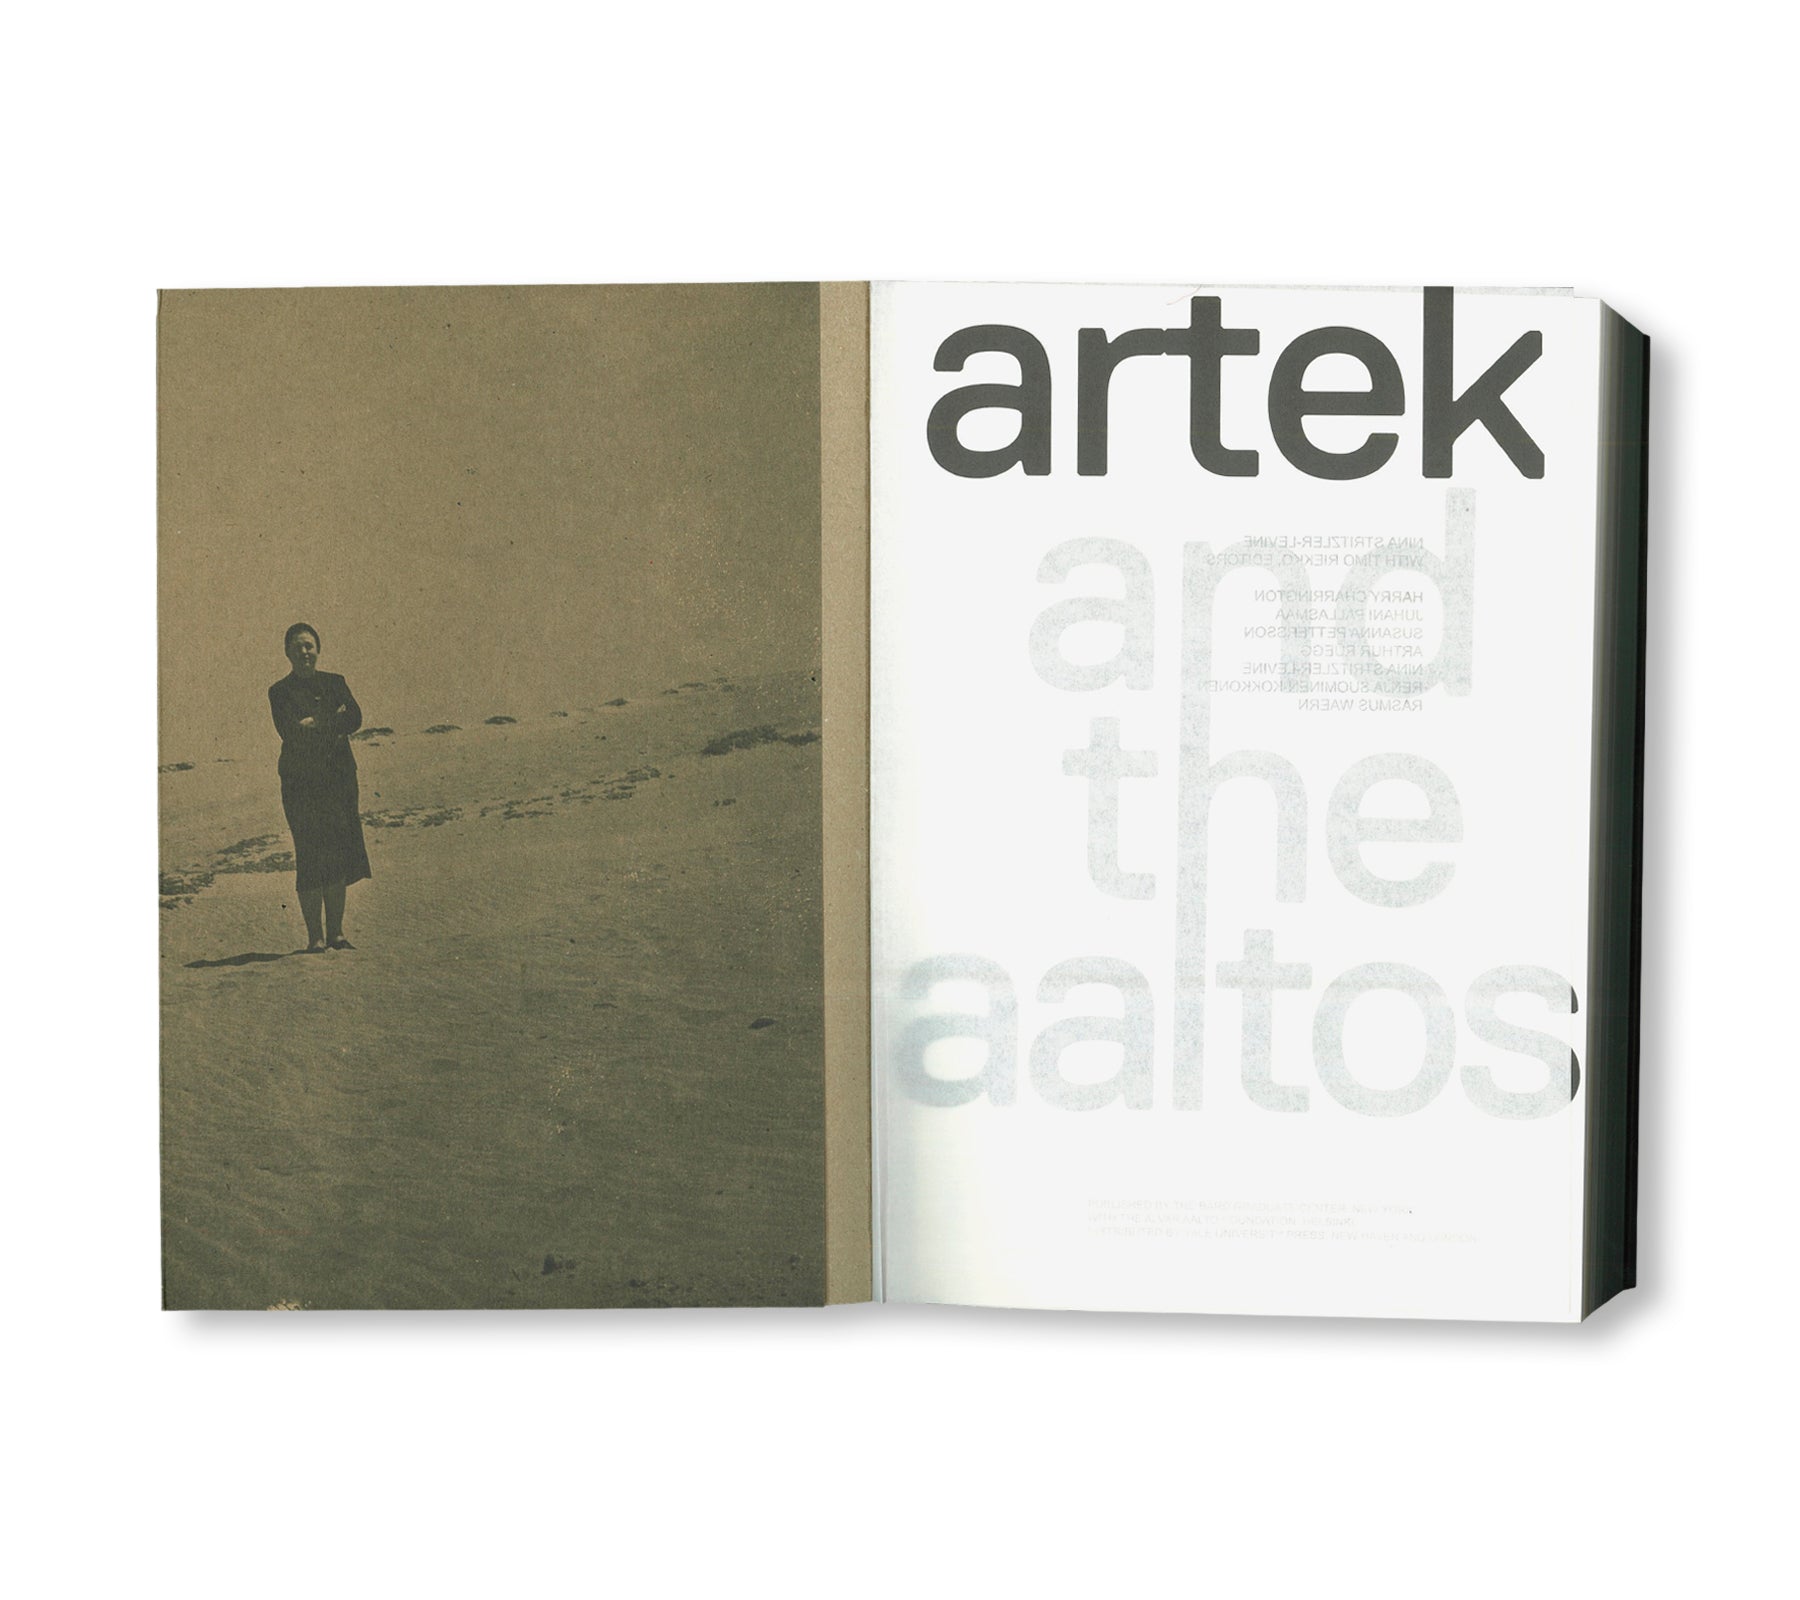 ARTEK AND THE AALTOS: CREATING A MODERN WORLD